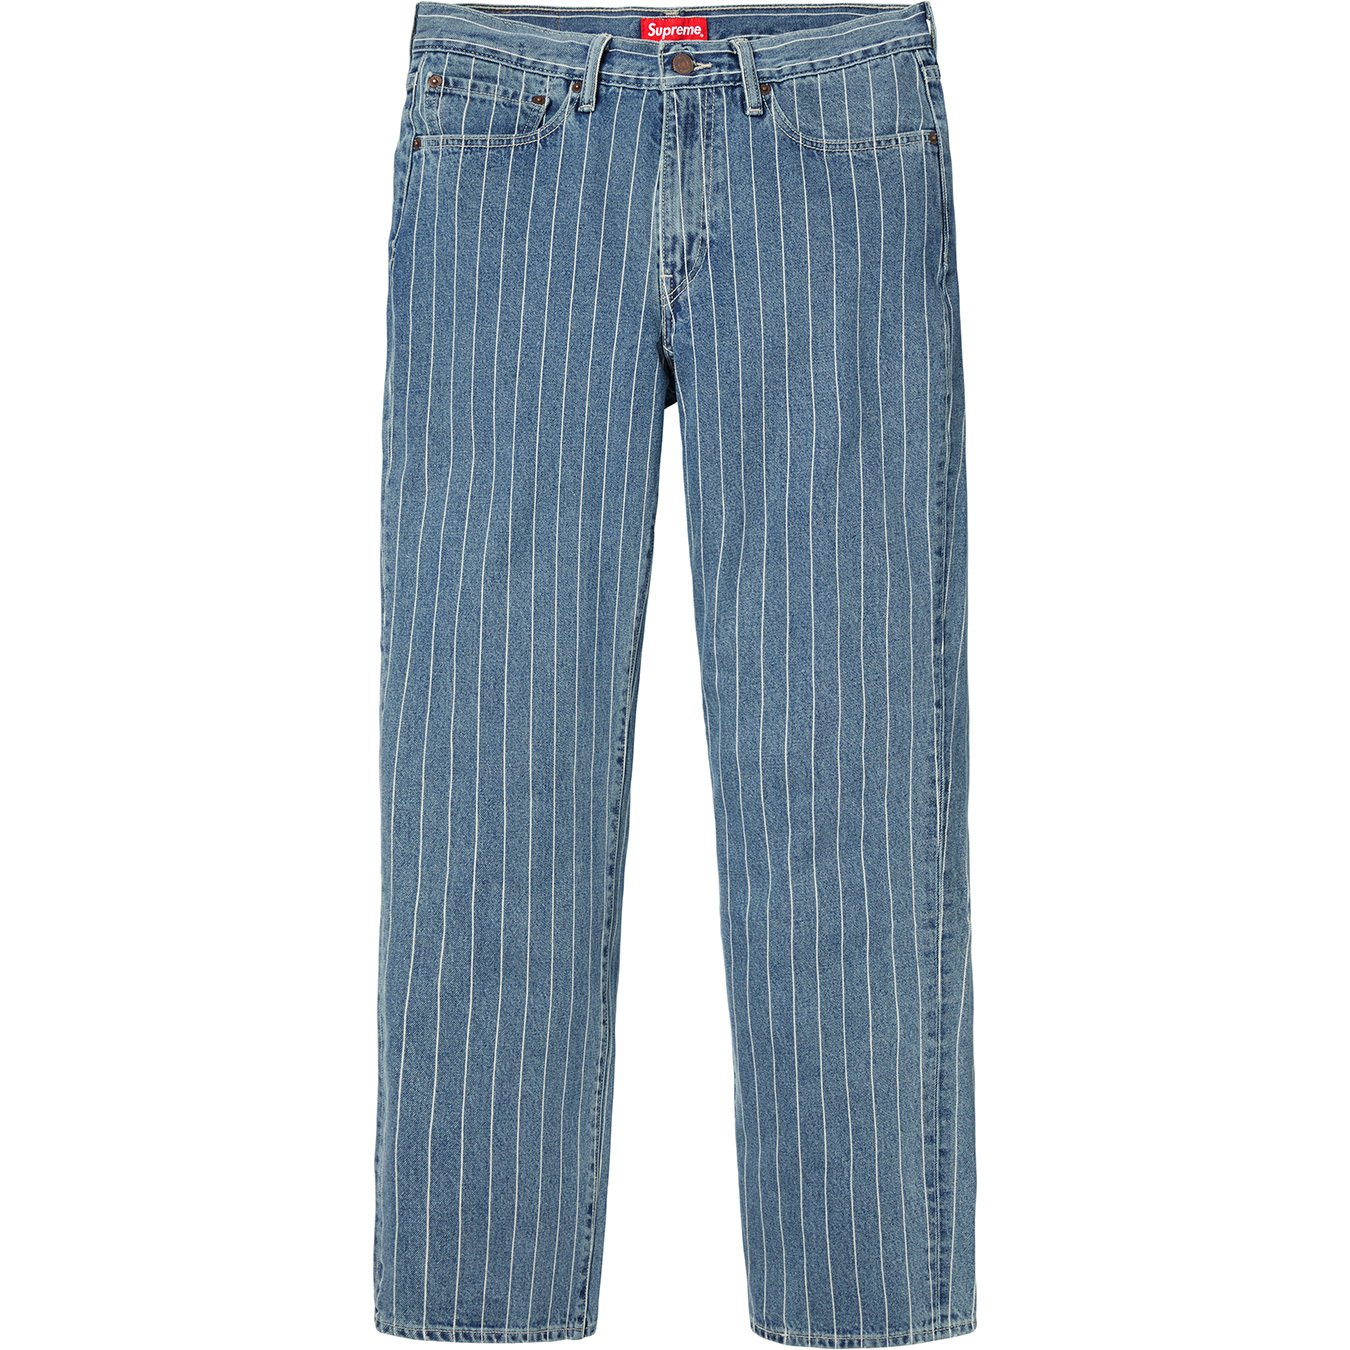 Supreme Levi’s Pinstripe 550 Jeans 30×32 デニム/ジーンズ パンツ メンズ 安い 販売オンライン